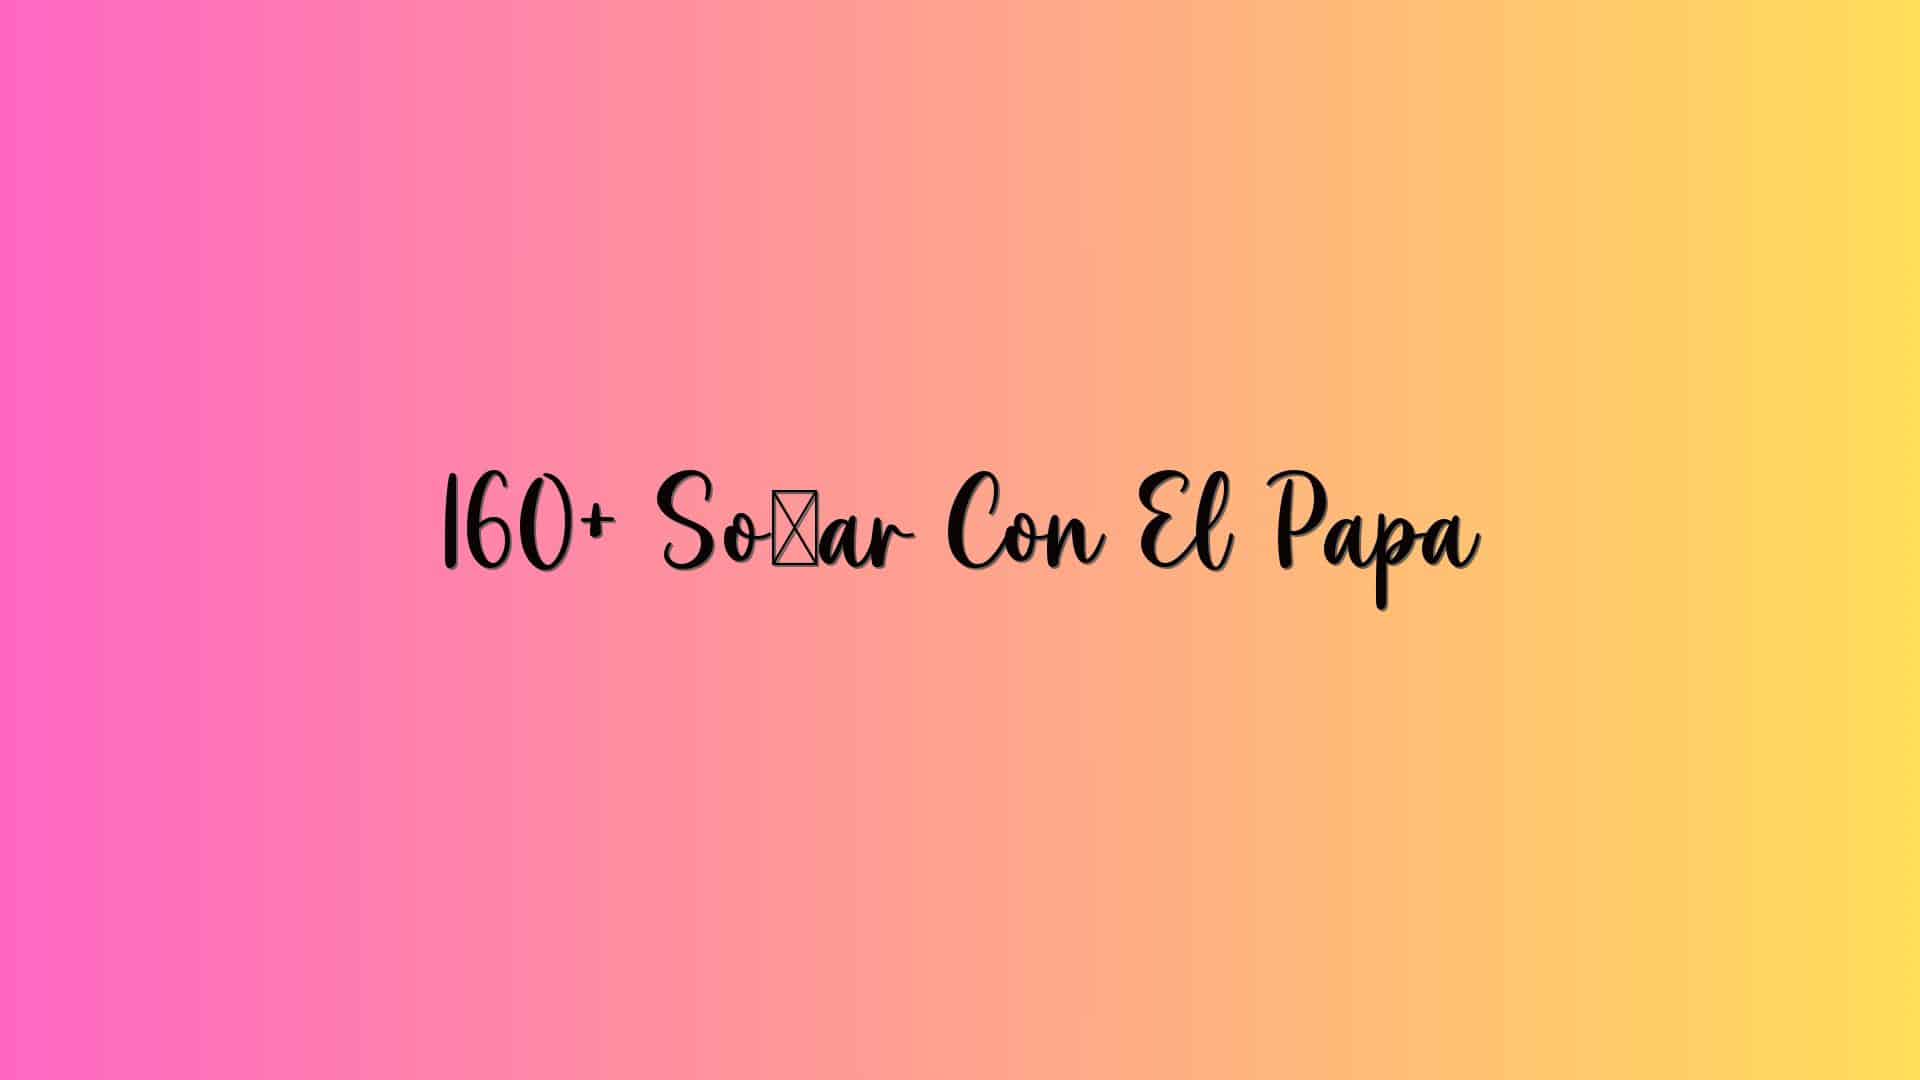 160+ Soñar Con El Papa